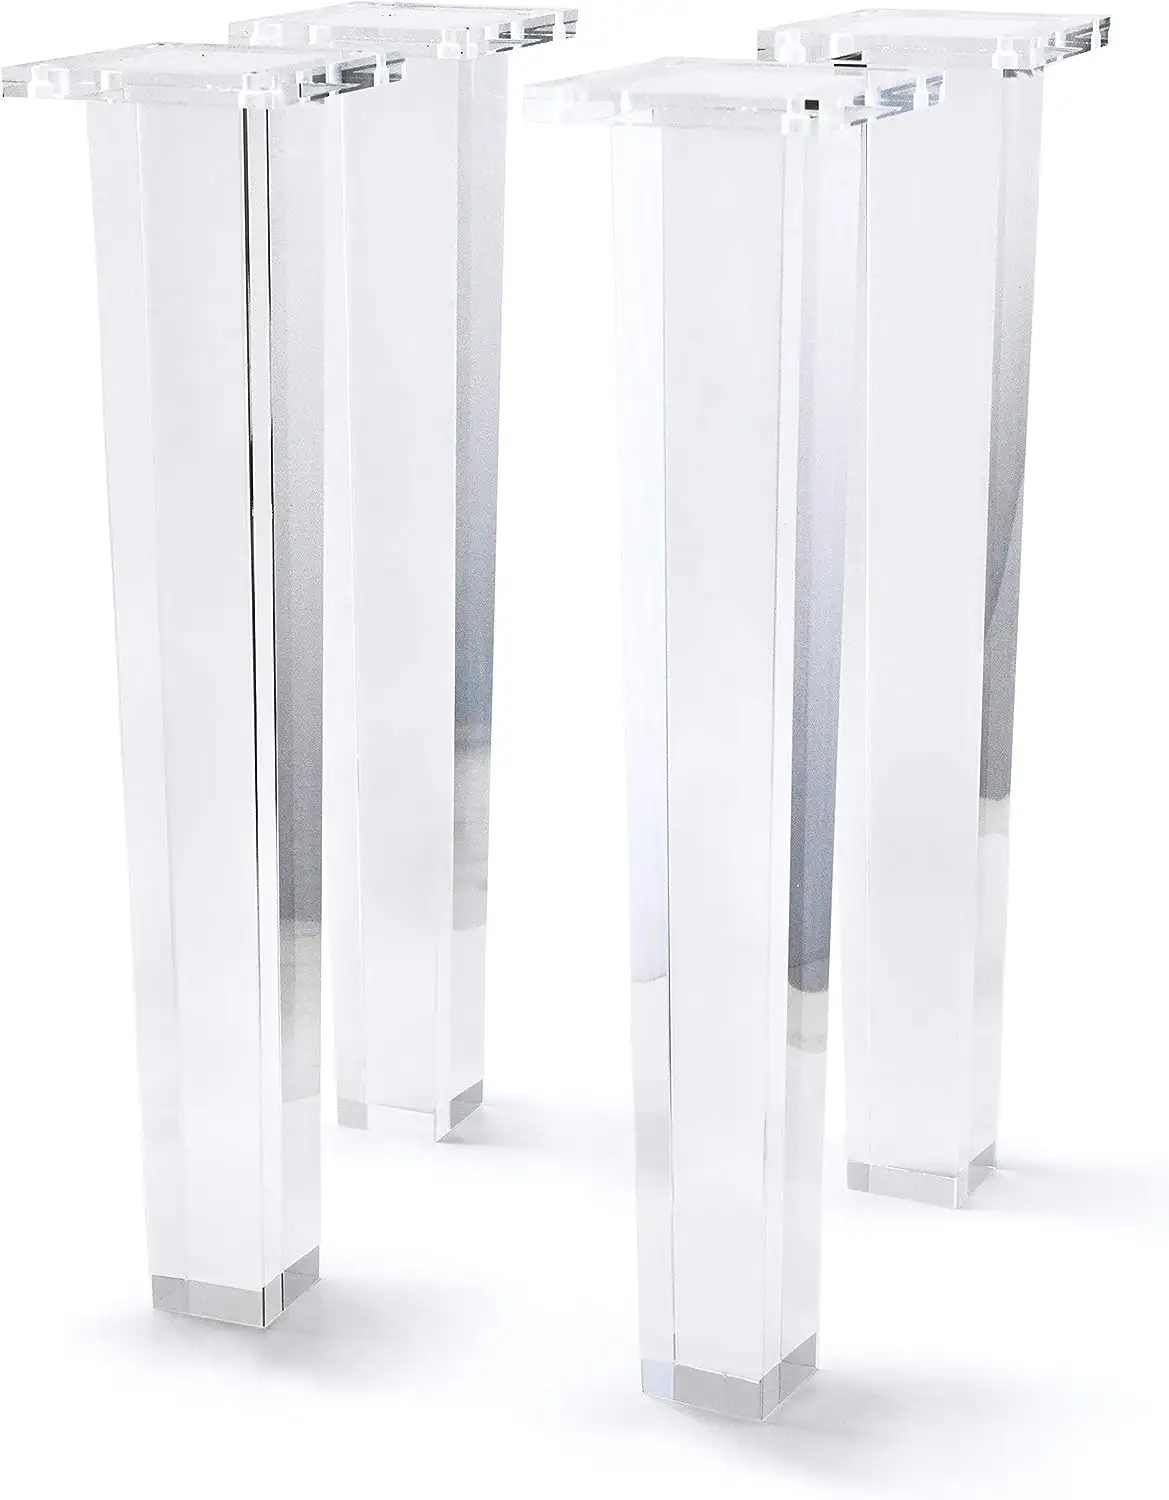 Patas de acrílico transparente para muebles, Juego de 4 Patas de repuesto de acrílico moderno para muebles para el hogar, decoración DIY